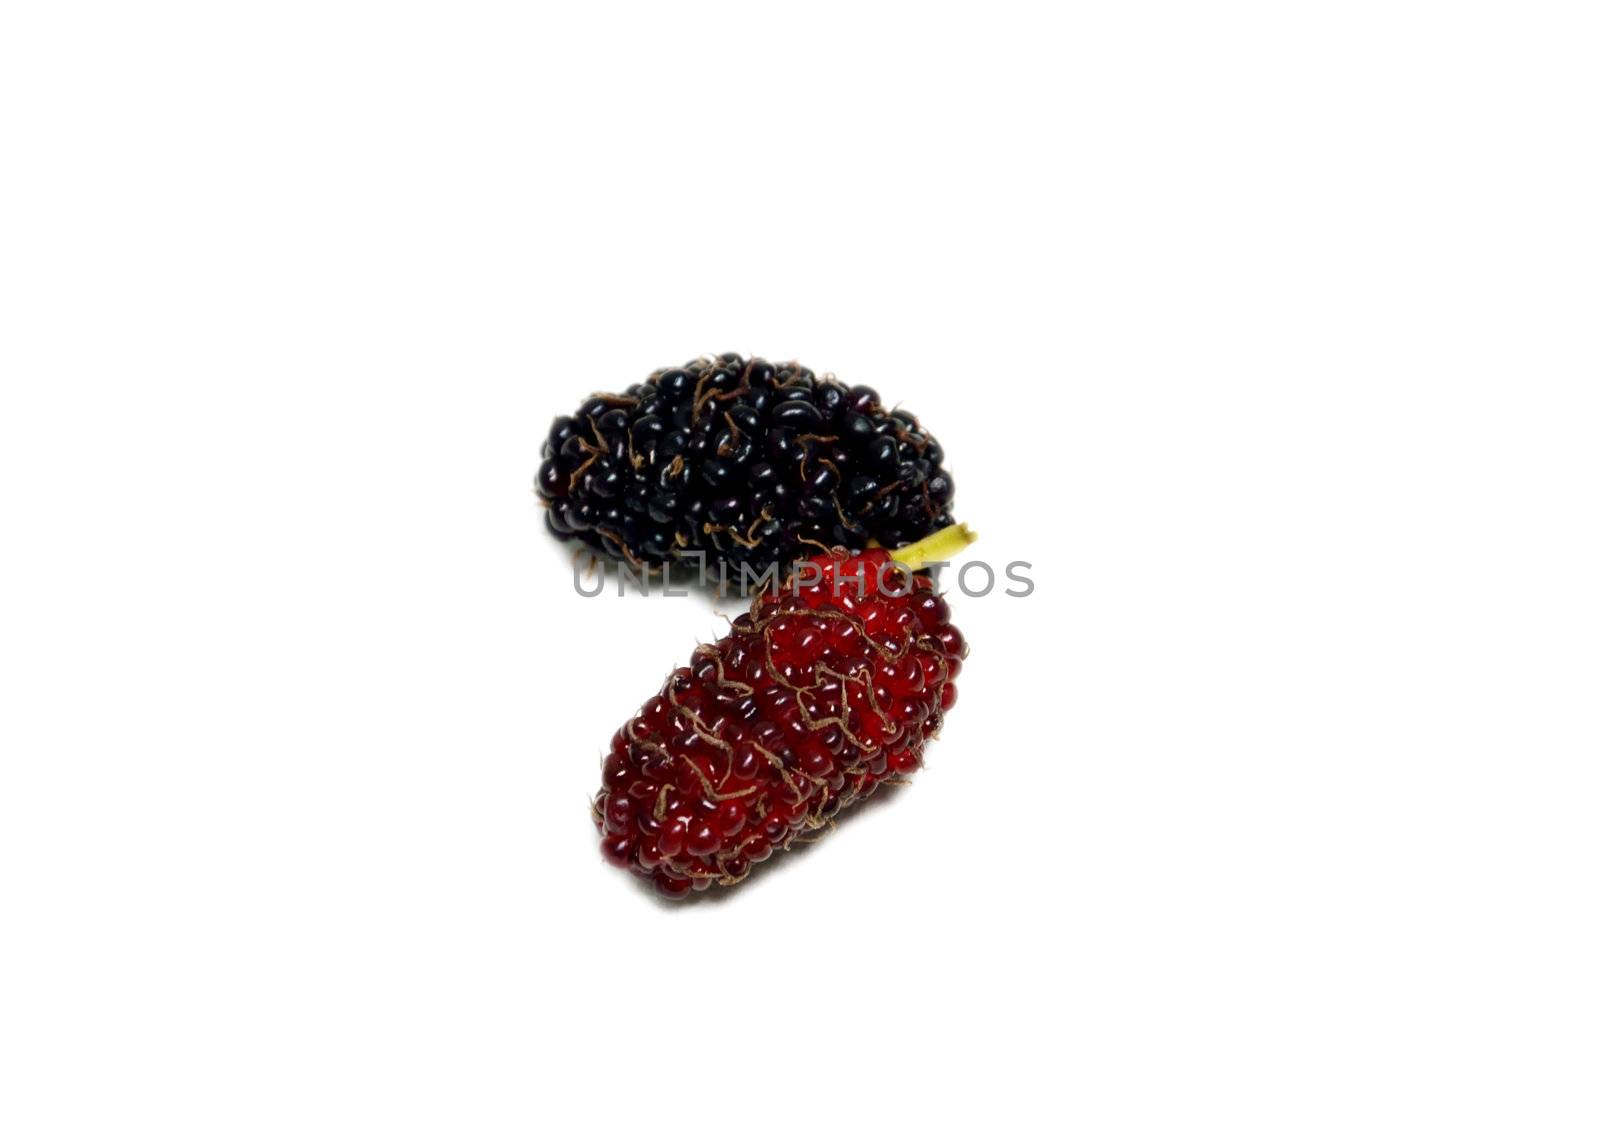  mulberries by rakratchada